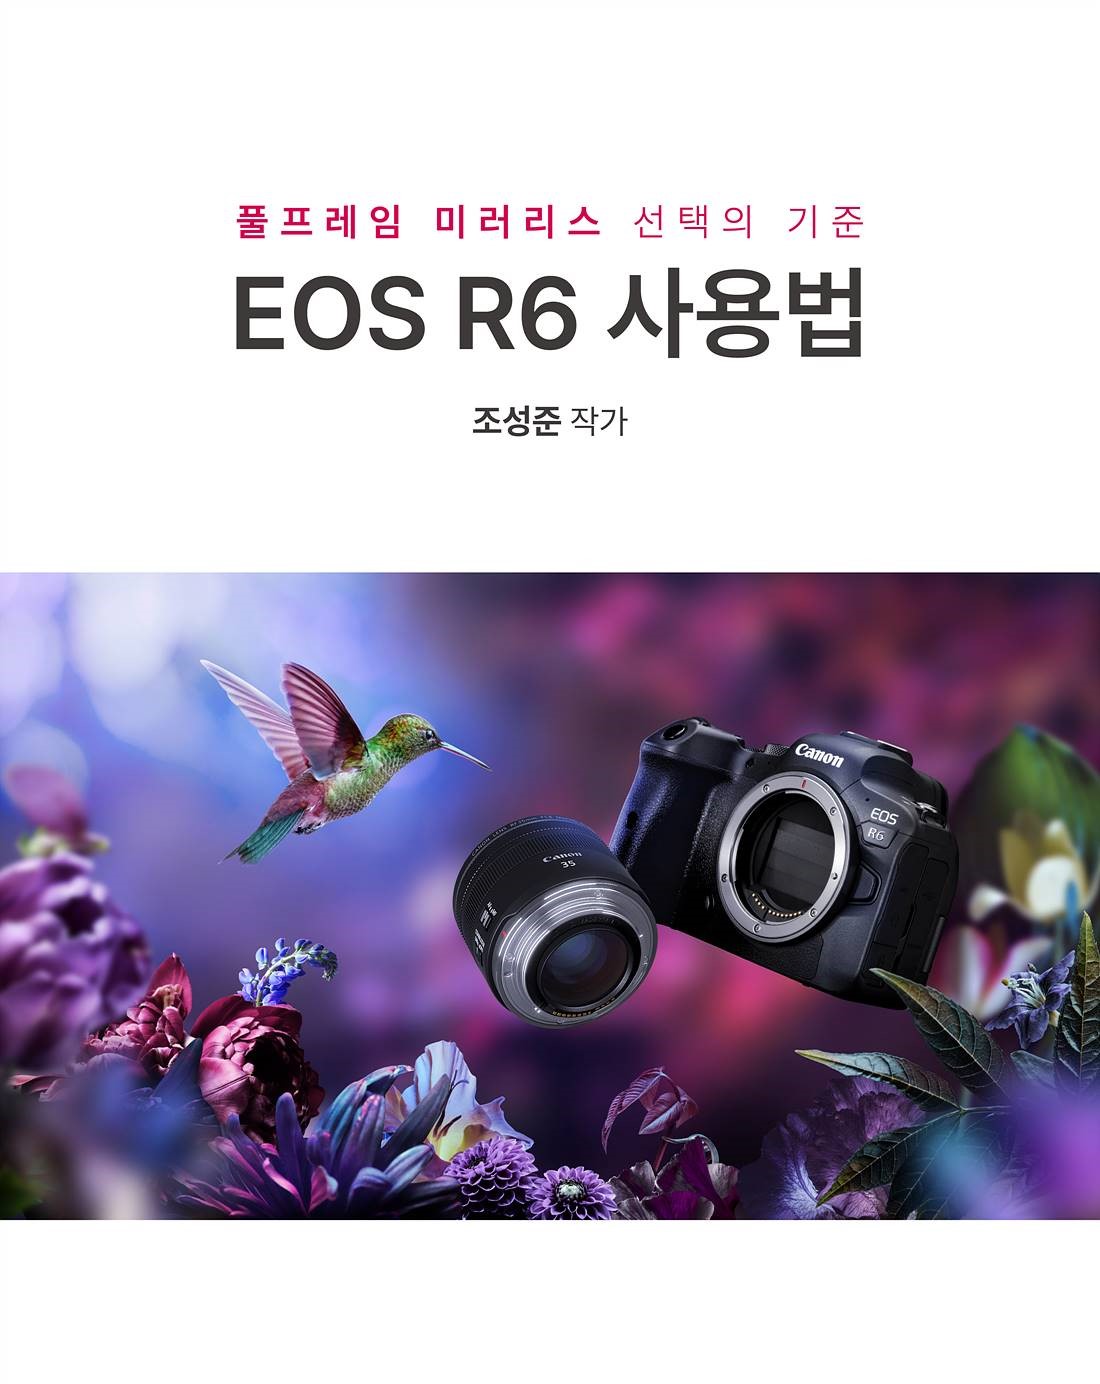 온라인아카데미 EOS R6 사용법 소개 페이지1-1.jpg